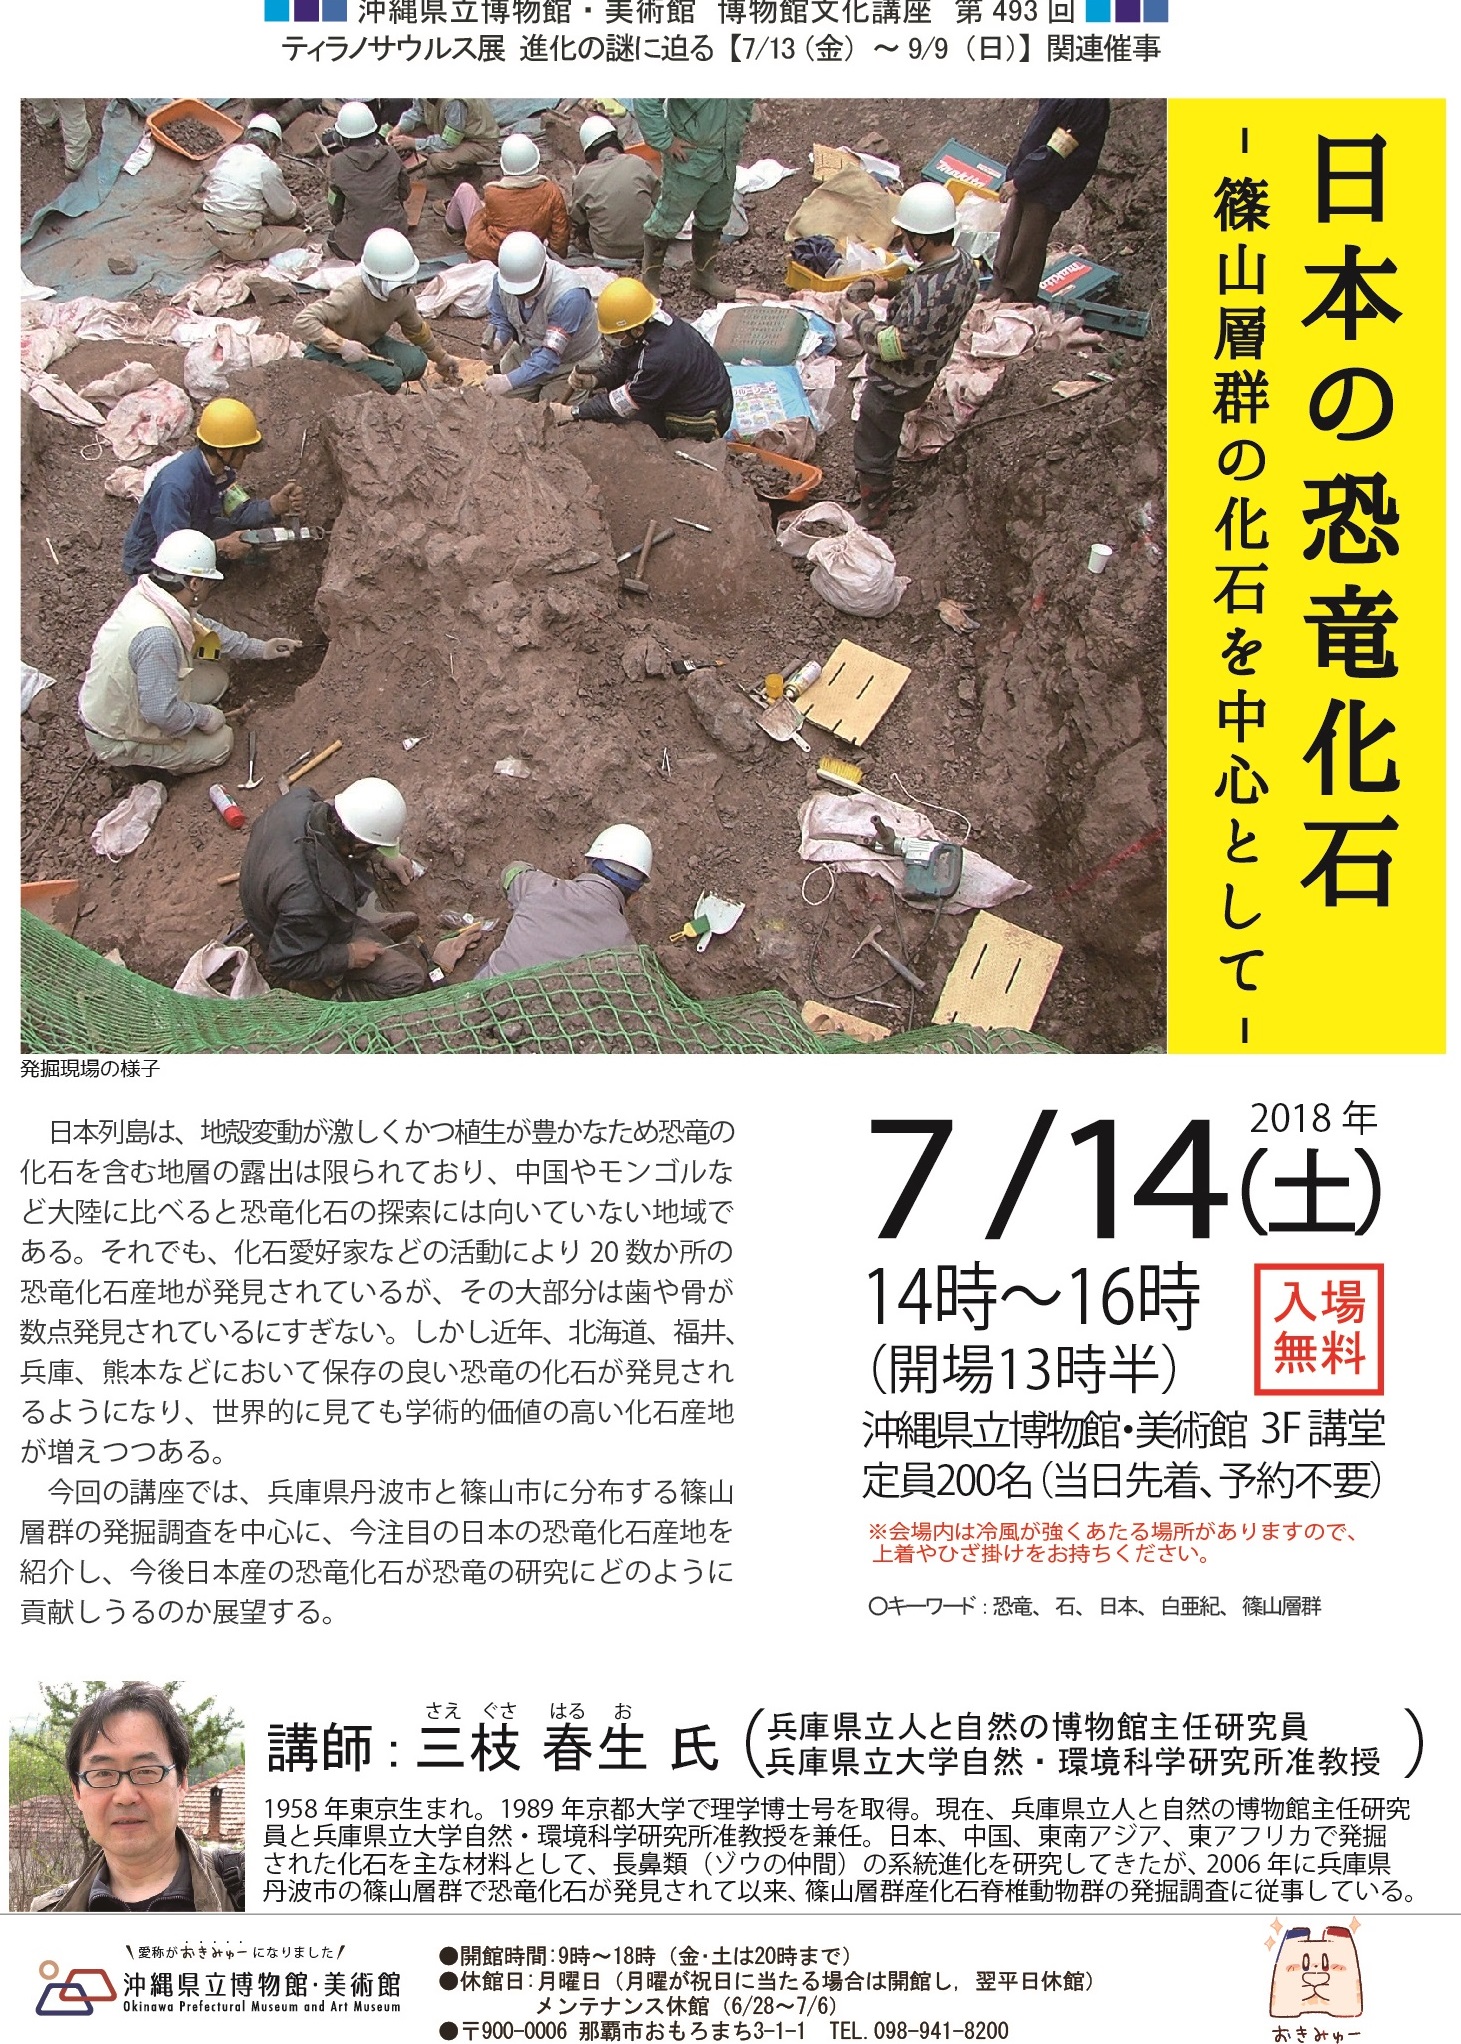 博物館文化講座「日本の恐竜化石-篠山層群の化石を中心として-」